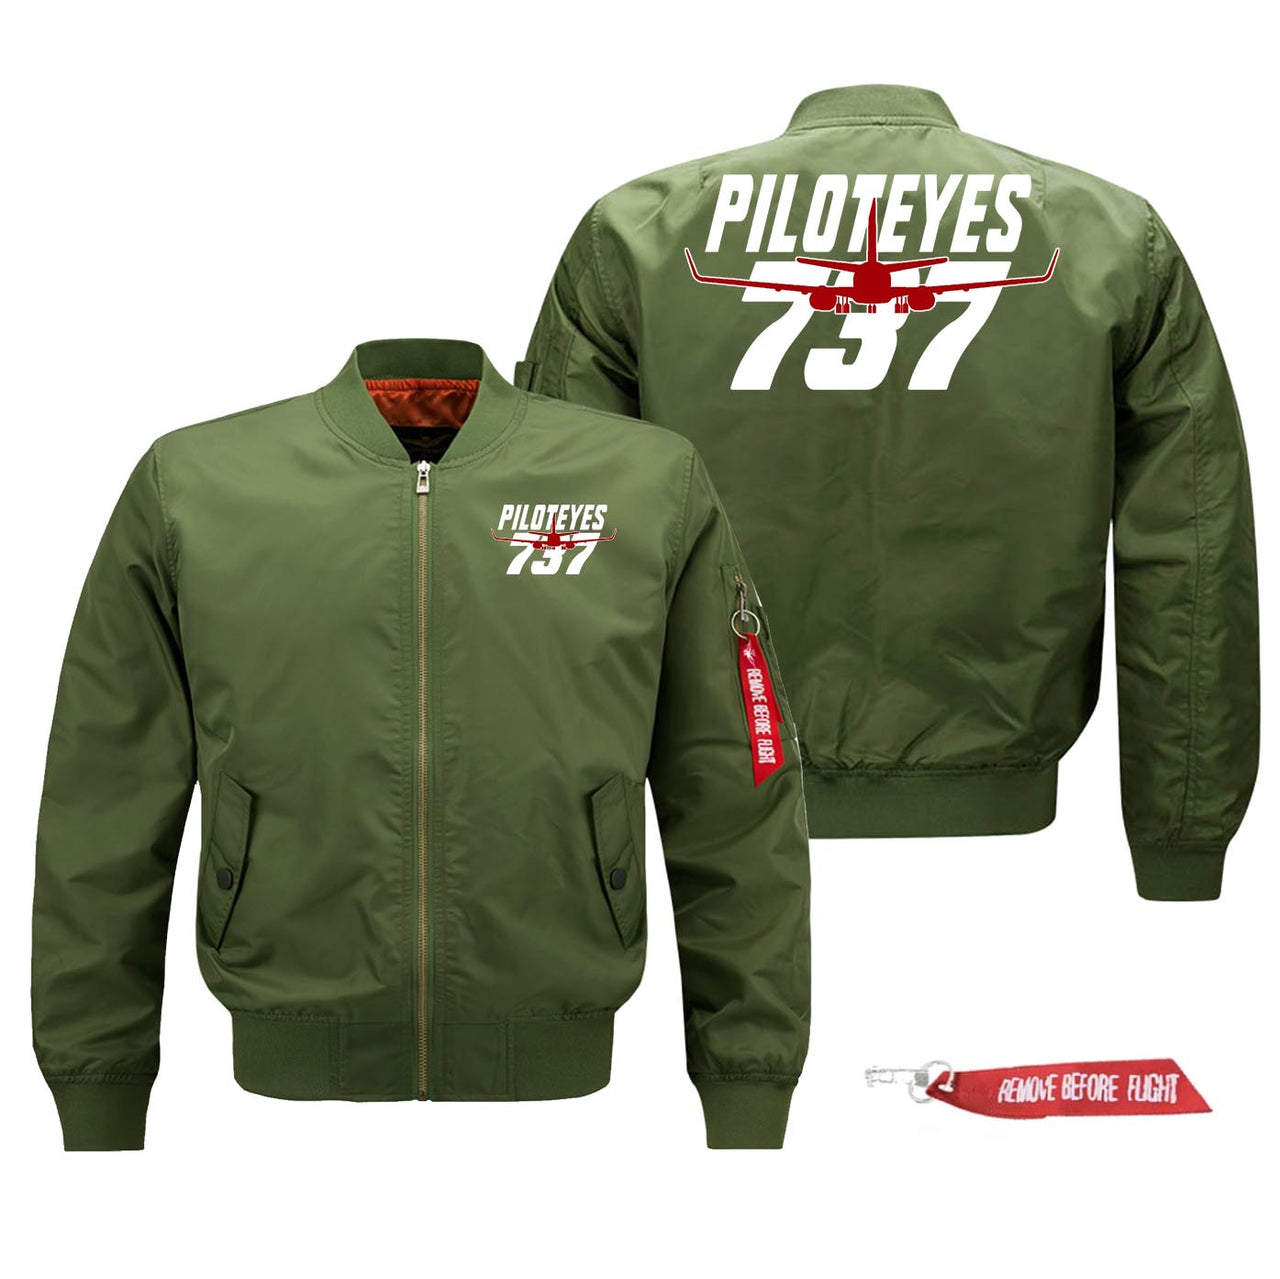 Amazing Piloteyes737 Designed Pilot Jackets (Customizable)